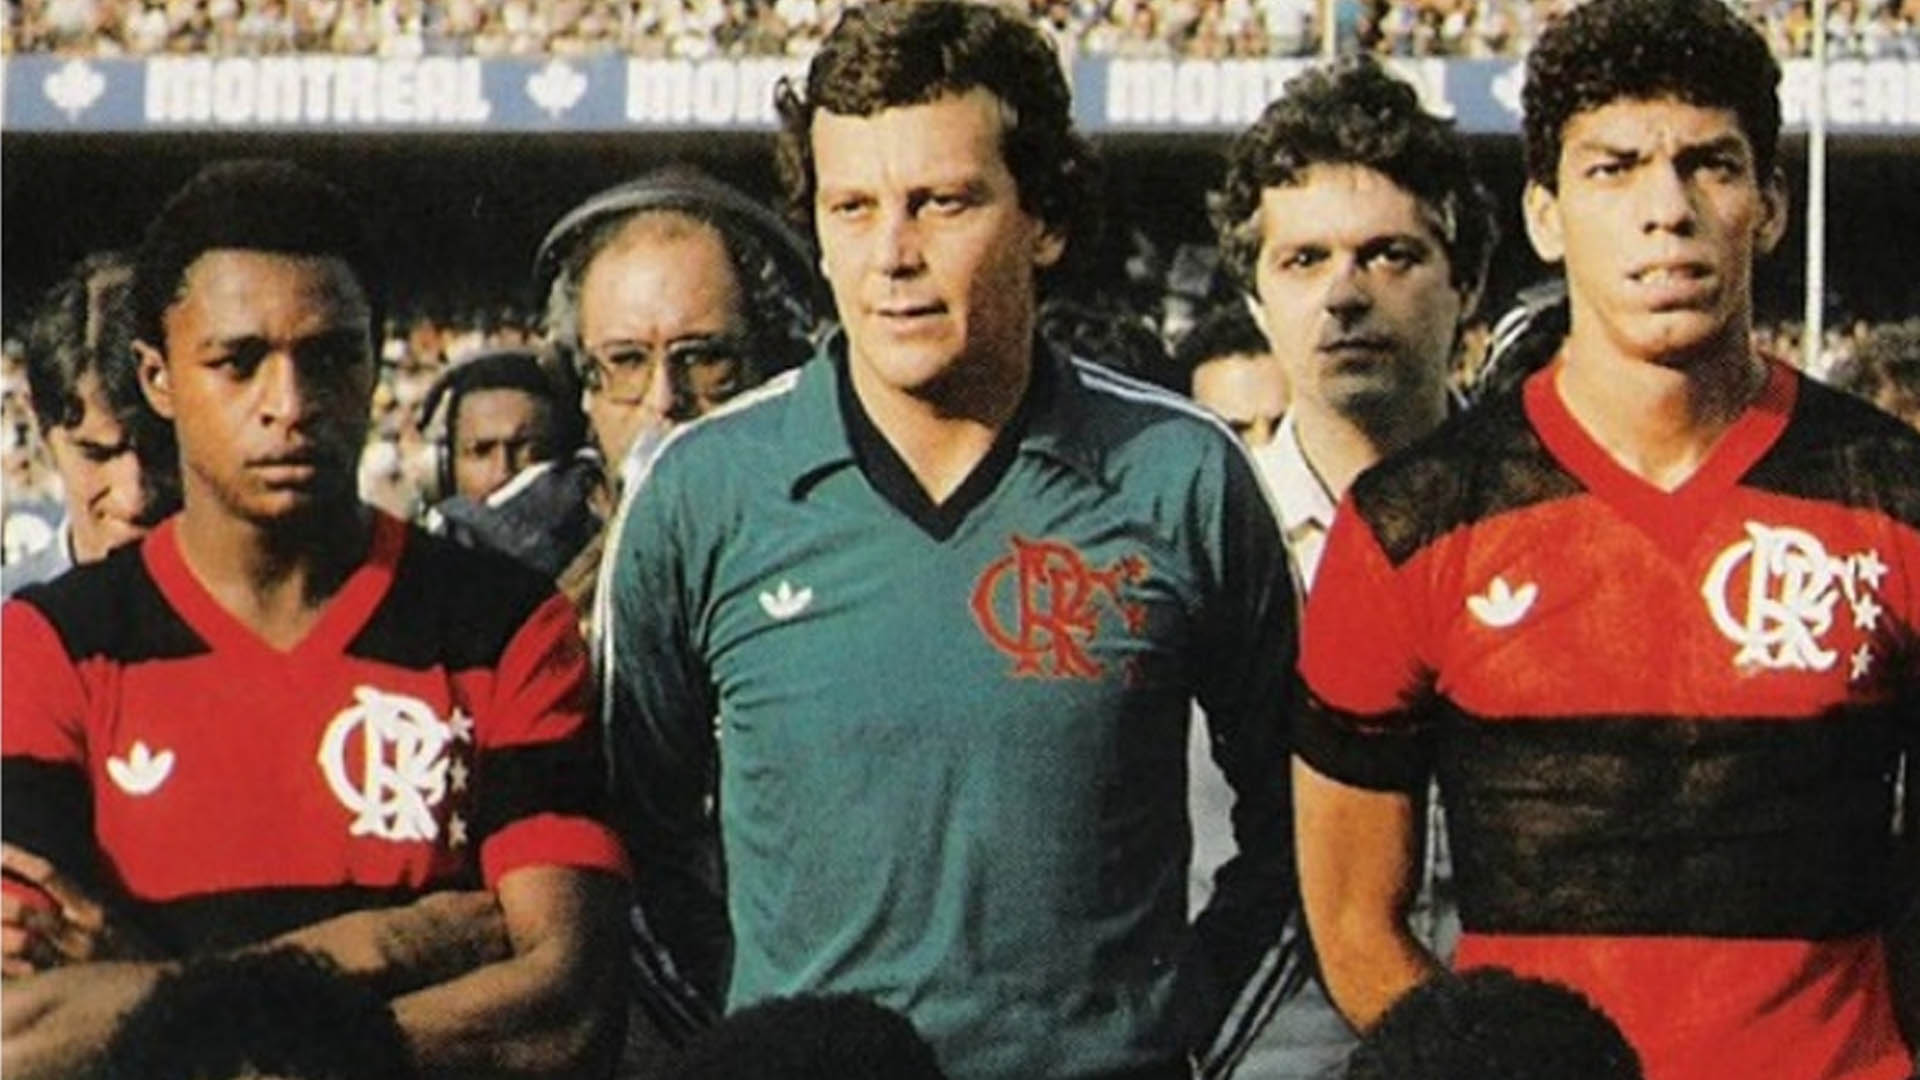 Raul Plassmann - Embora tivesse currículo invejável no Cruzeiro e Flamengo, Raul teve poucas chances na Seleção Brasileira. Fez apenas 17 partidas, entre 1975 e 1980. Ficou no páreo para disputar a Copa do Mundo de 1982, mas o então técnico Telê Santana optou por levar o trio de goleiros formado por Valdir Peres, Paulo Sérgio e Carlos para a Espanha. 